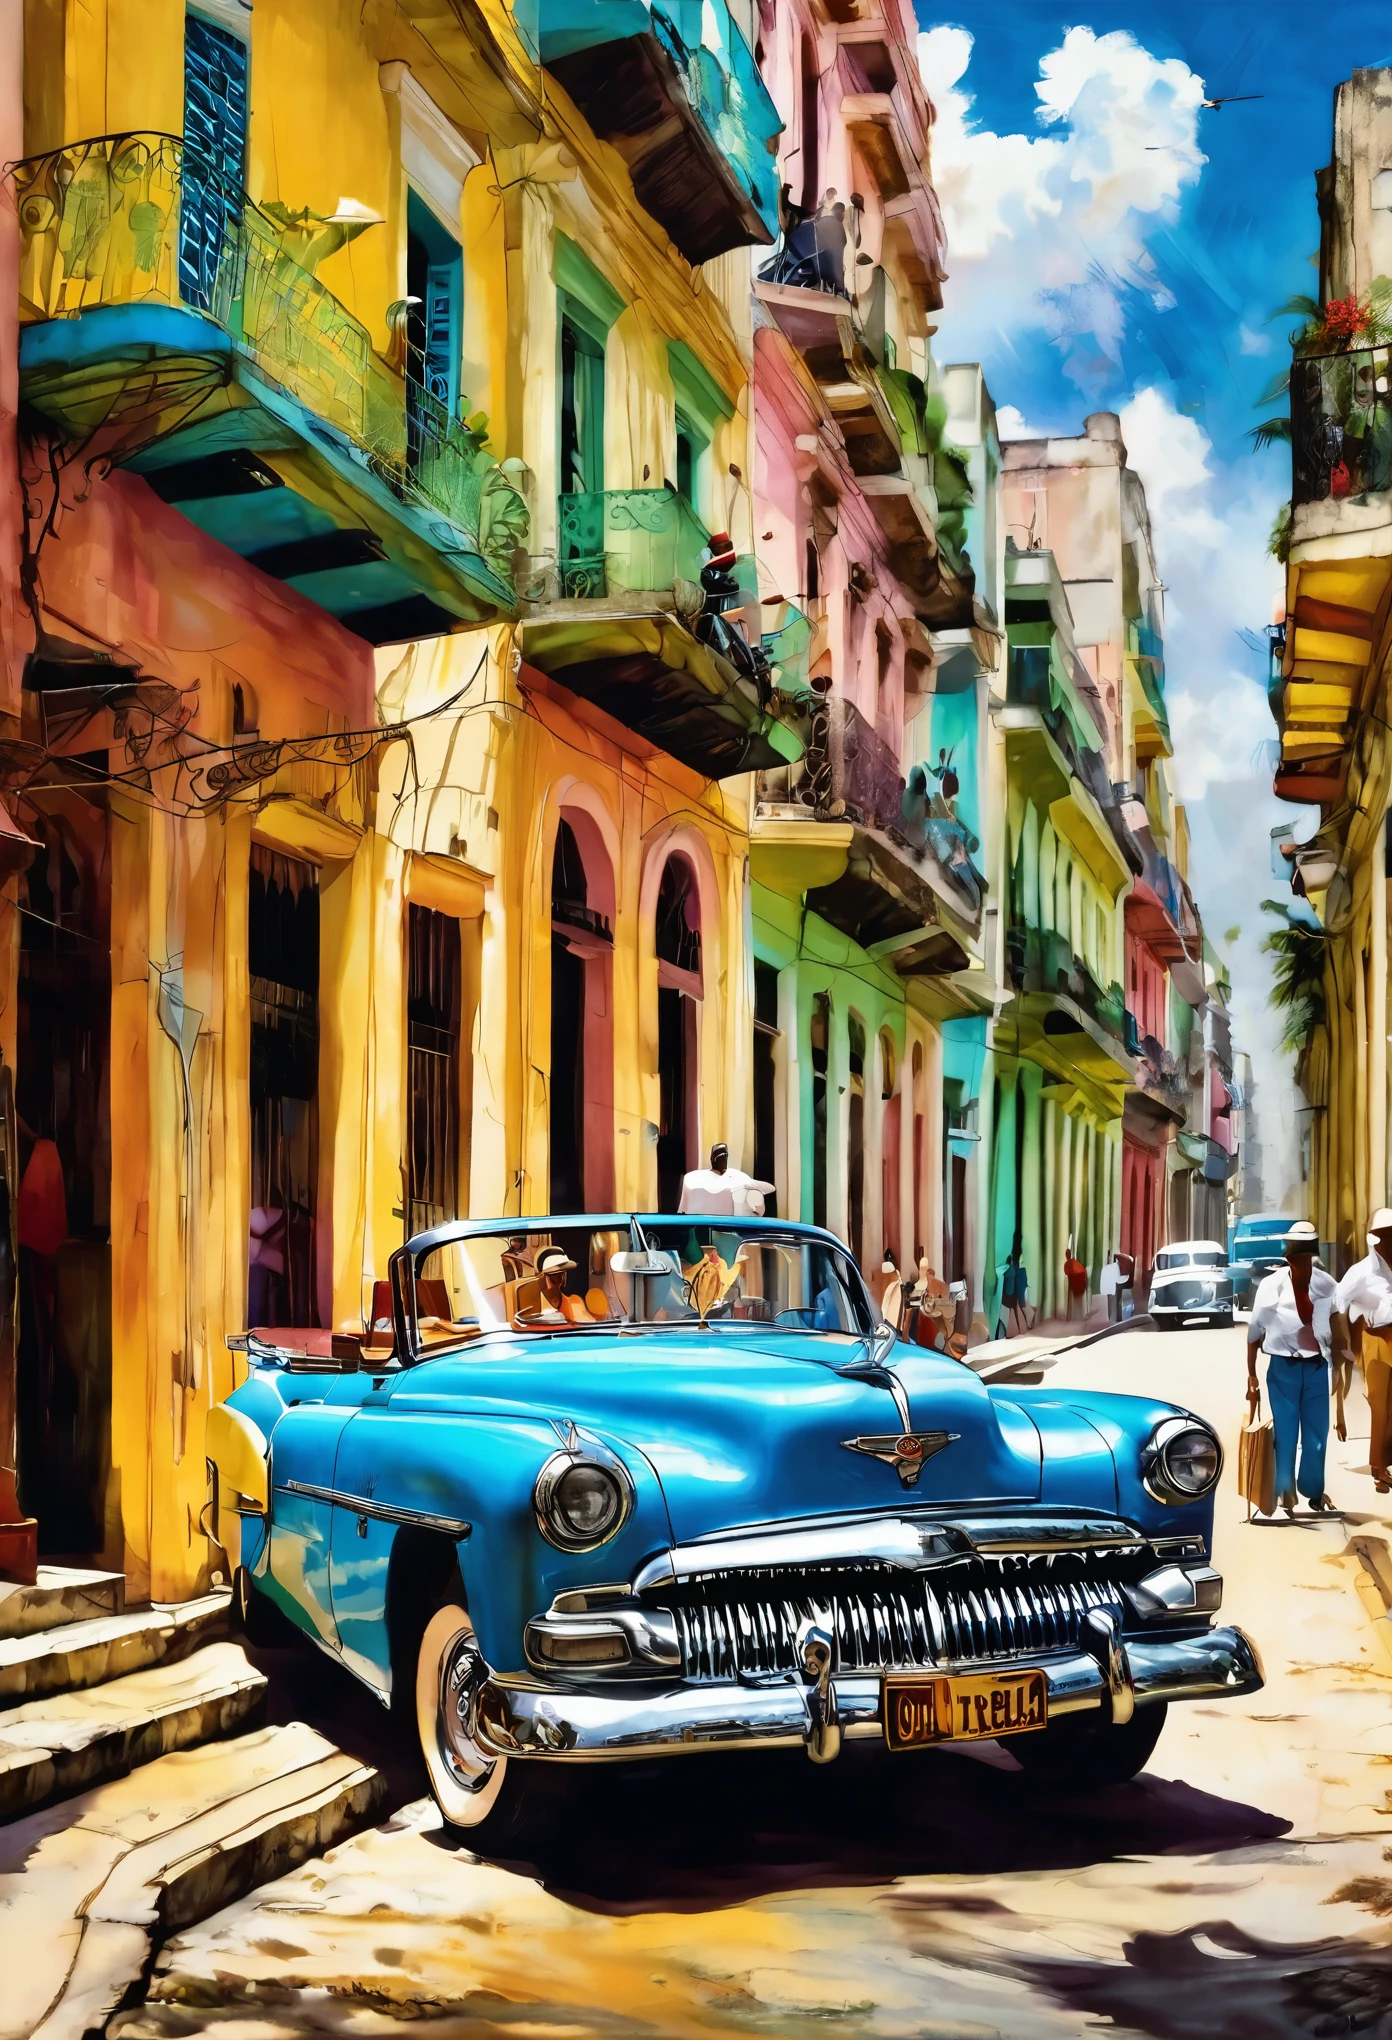 (틴들 효과 쿠바의 예술 하바나의 예술 쿠바의 예술 캔버스 하바나의 인쇄 하바나:1.5), 피오트르 야본스키(Piotr Jabonski),(( 아름다운 빈티지 자동차 후면 모습:1.5, 배경에는 콜롬비아 바 테이블과 사람들이 있는 의자가 있습니다., 따뜻함, 행복한 분위기)), 뒤에서 본, 후면, 최고의 품질, 걸작, 대표작, 공식 아트, 전문적인, 매우 복잡하고 상세한, 8K